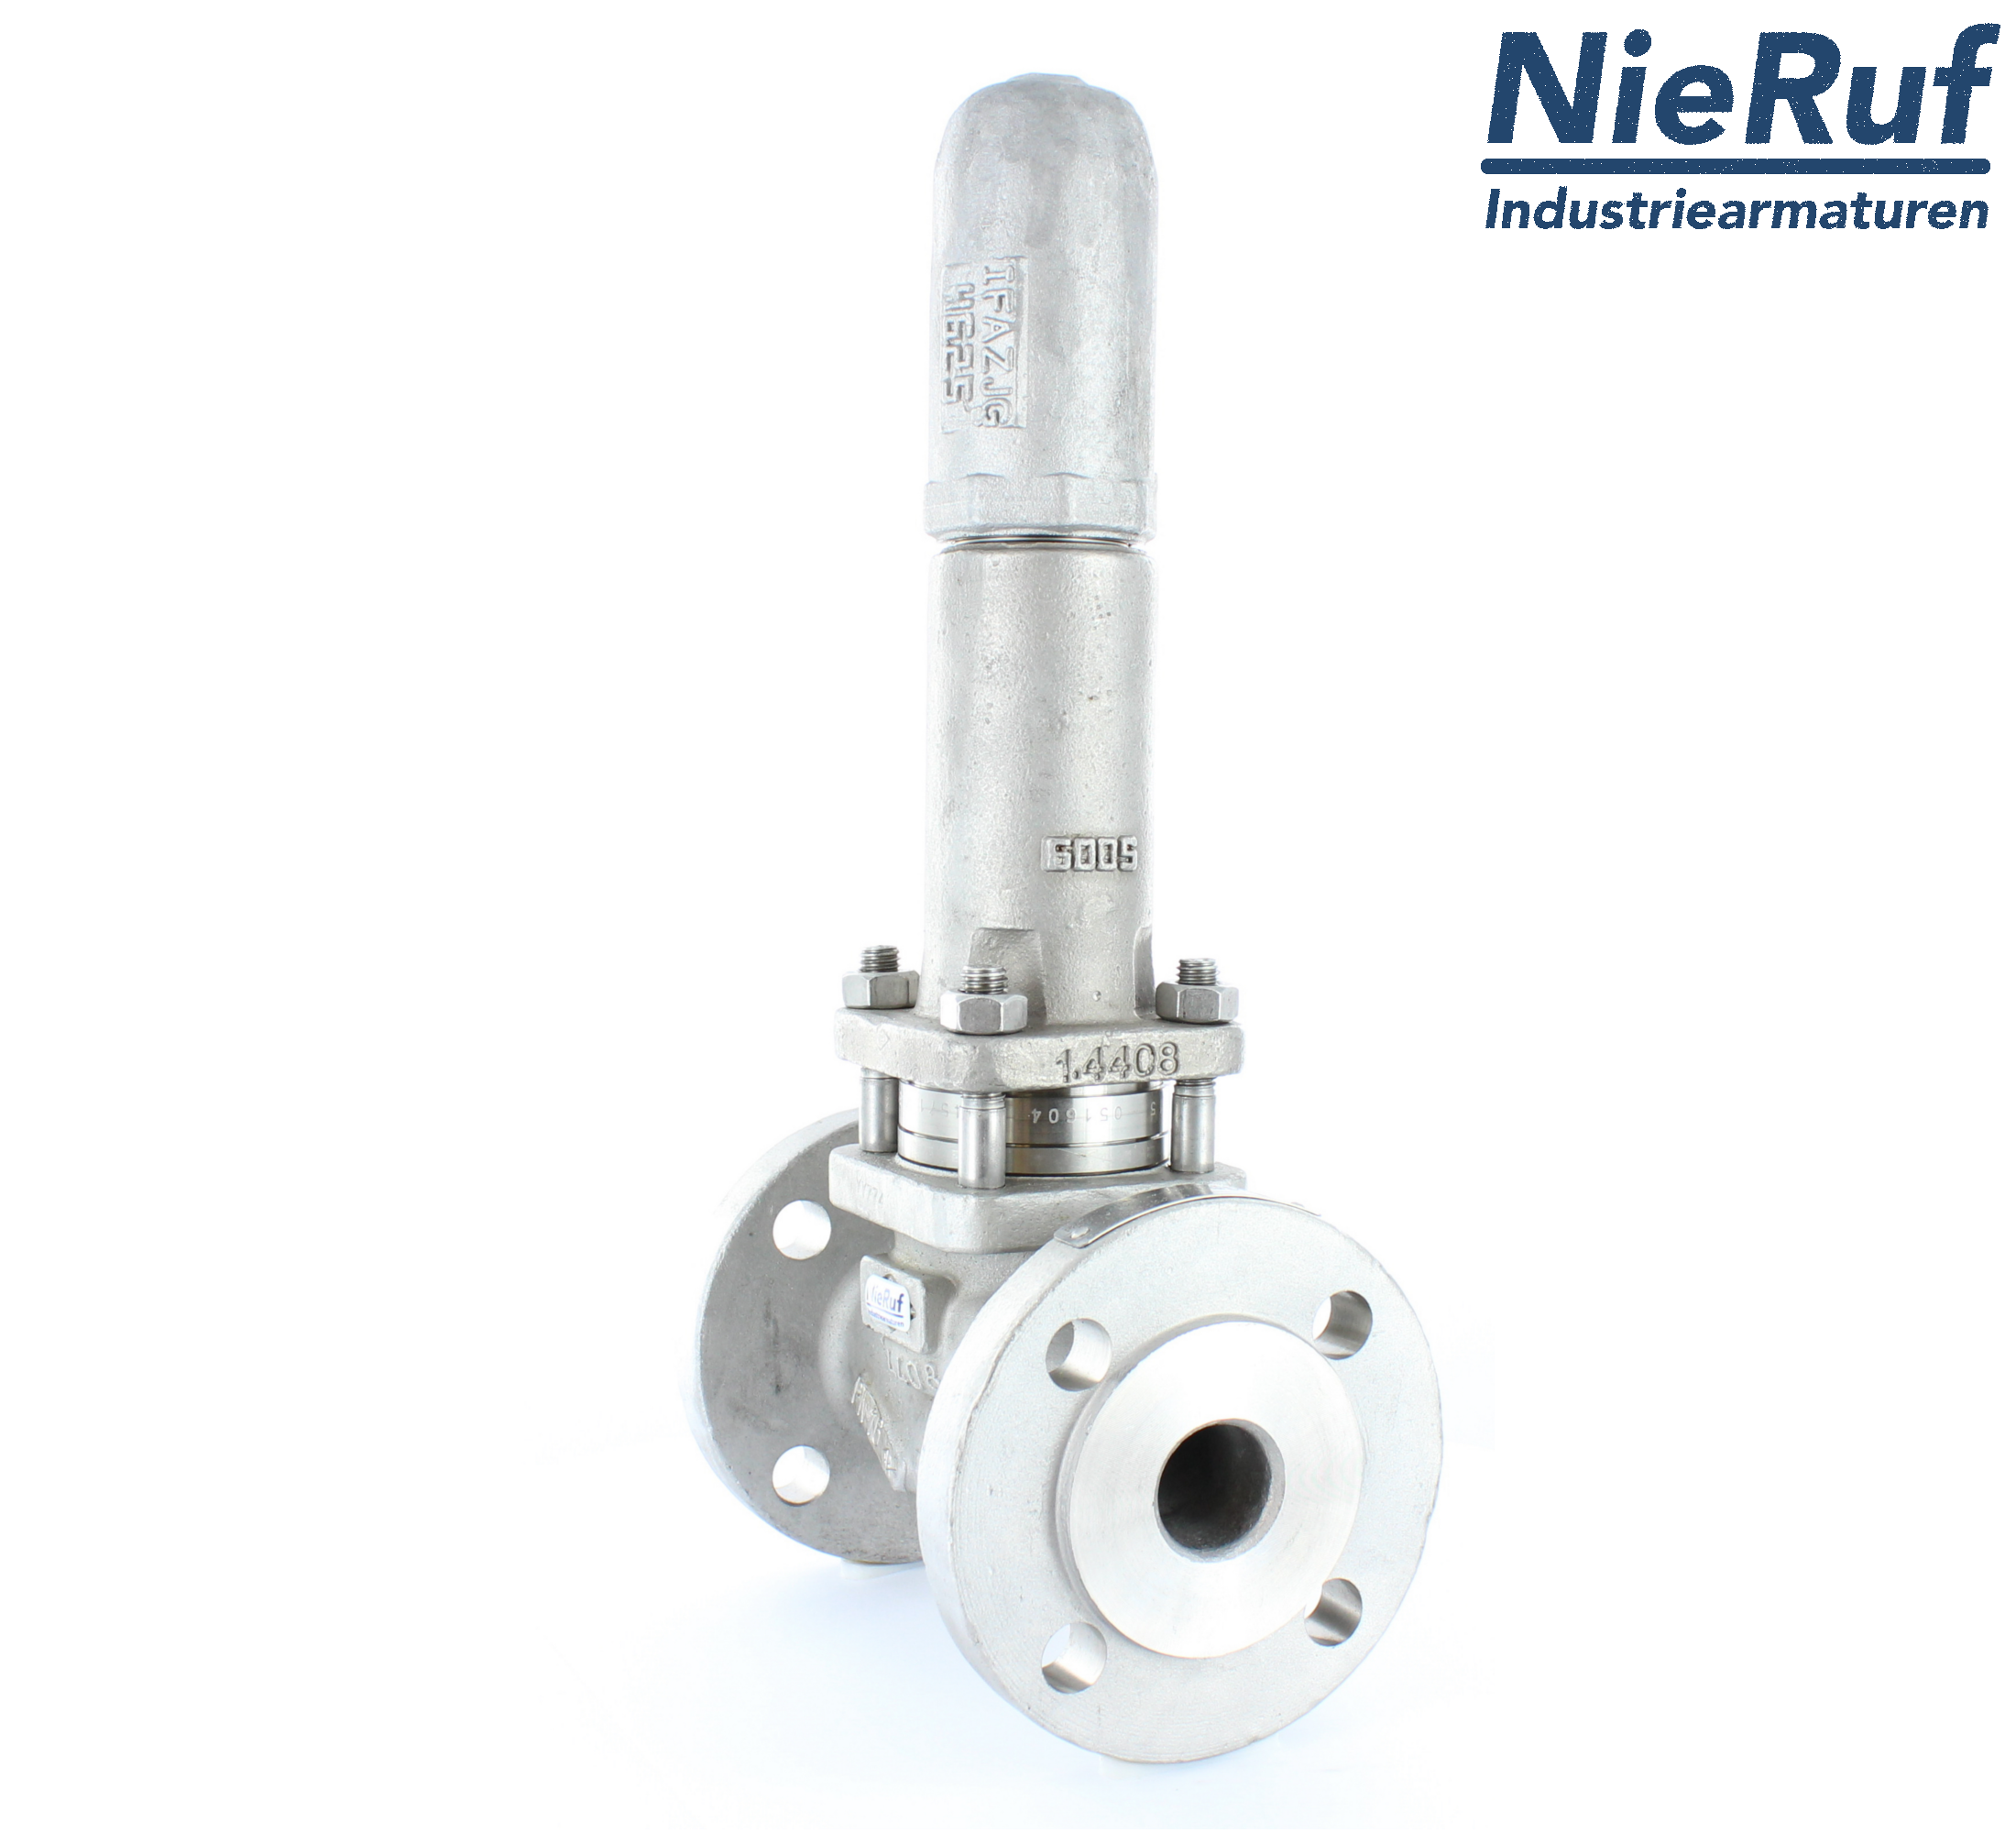 piston overflow valve DN 20 UV13 cast iron 1.0619+N 0,5 - 1,5 bar